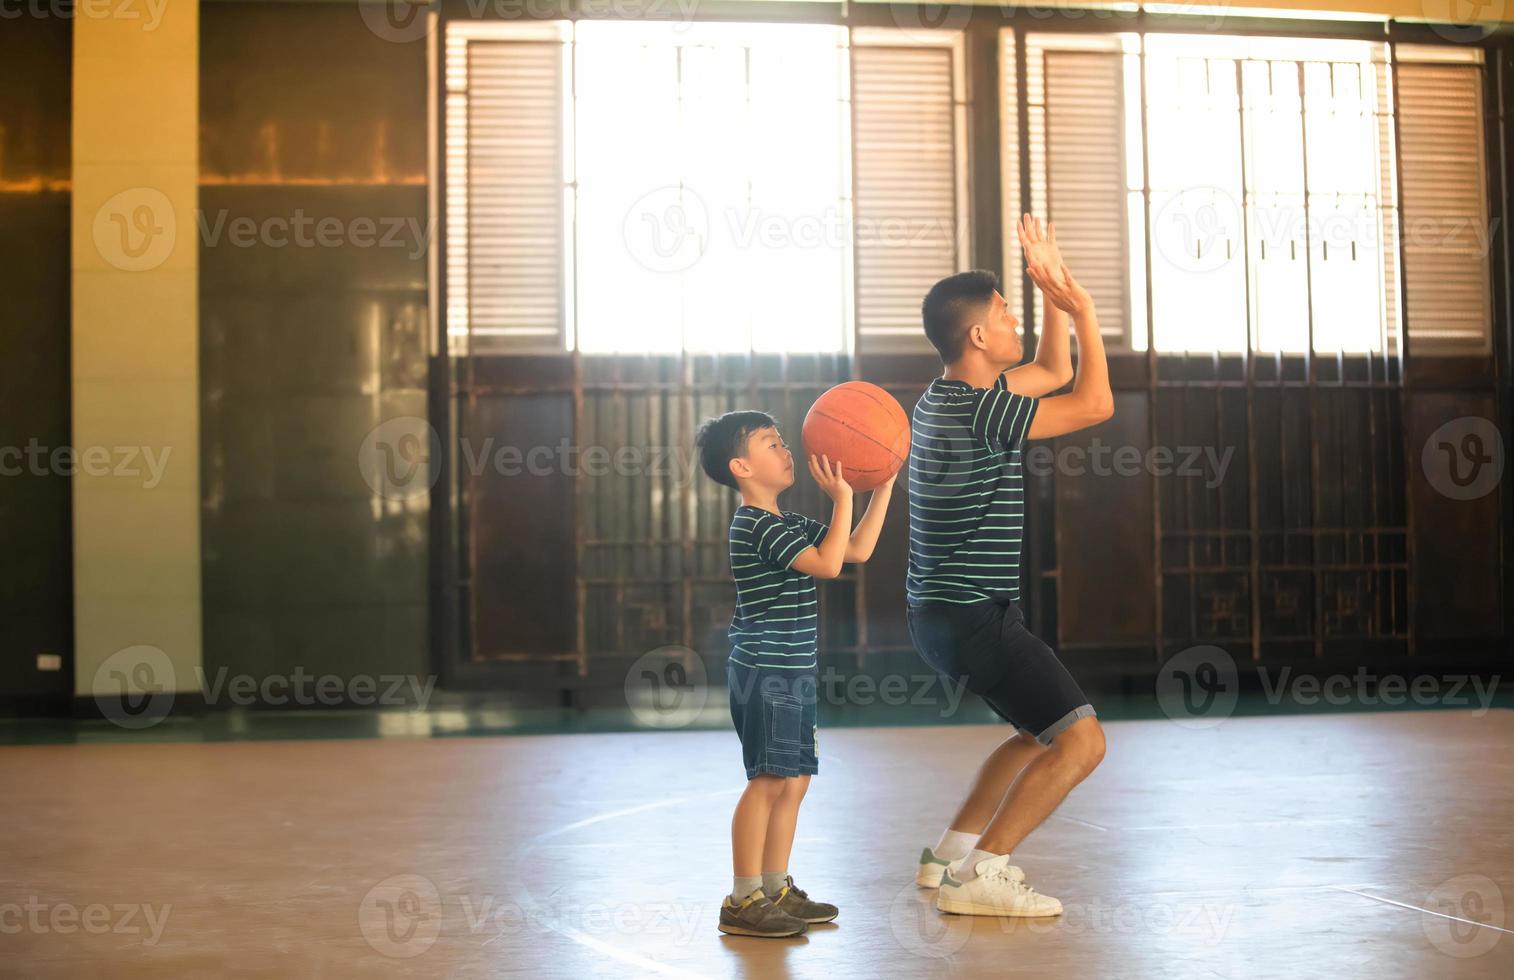 familia asiática jugando baloncesto juntos. familia feliz pasando tiempo libre juntos en vacaciones foto